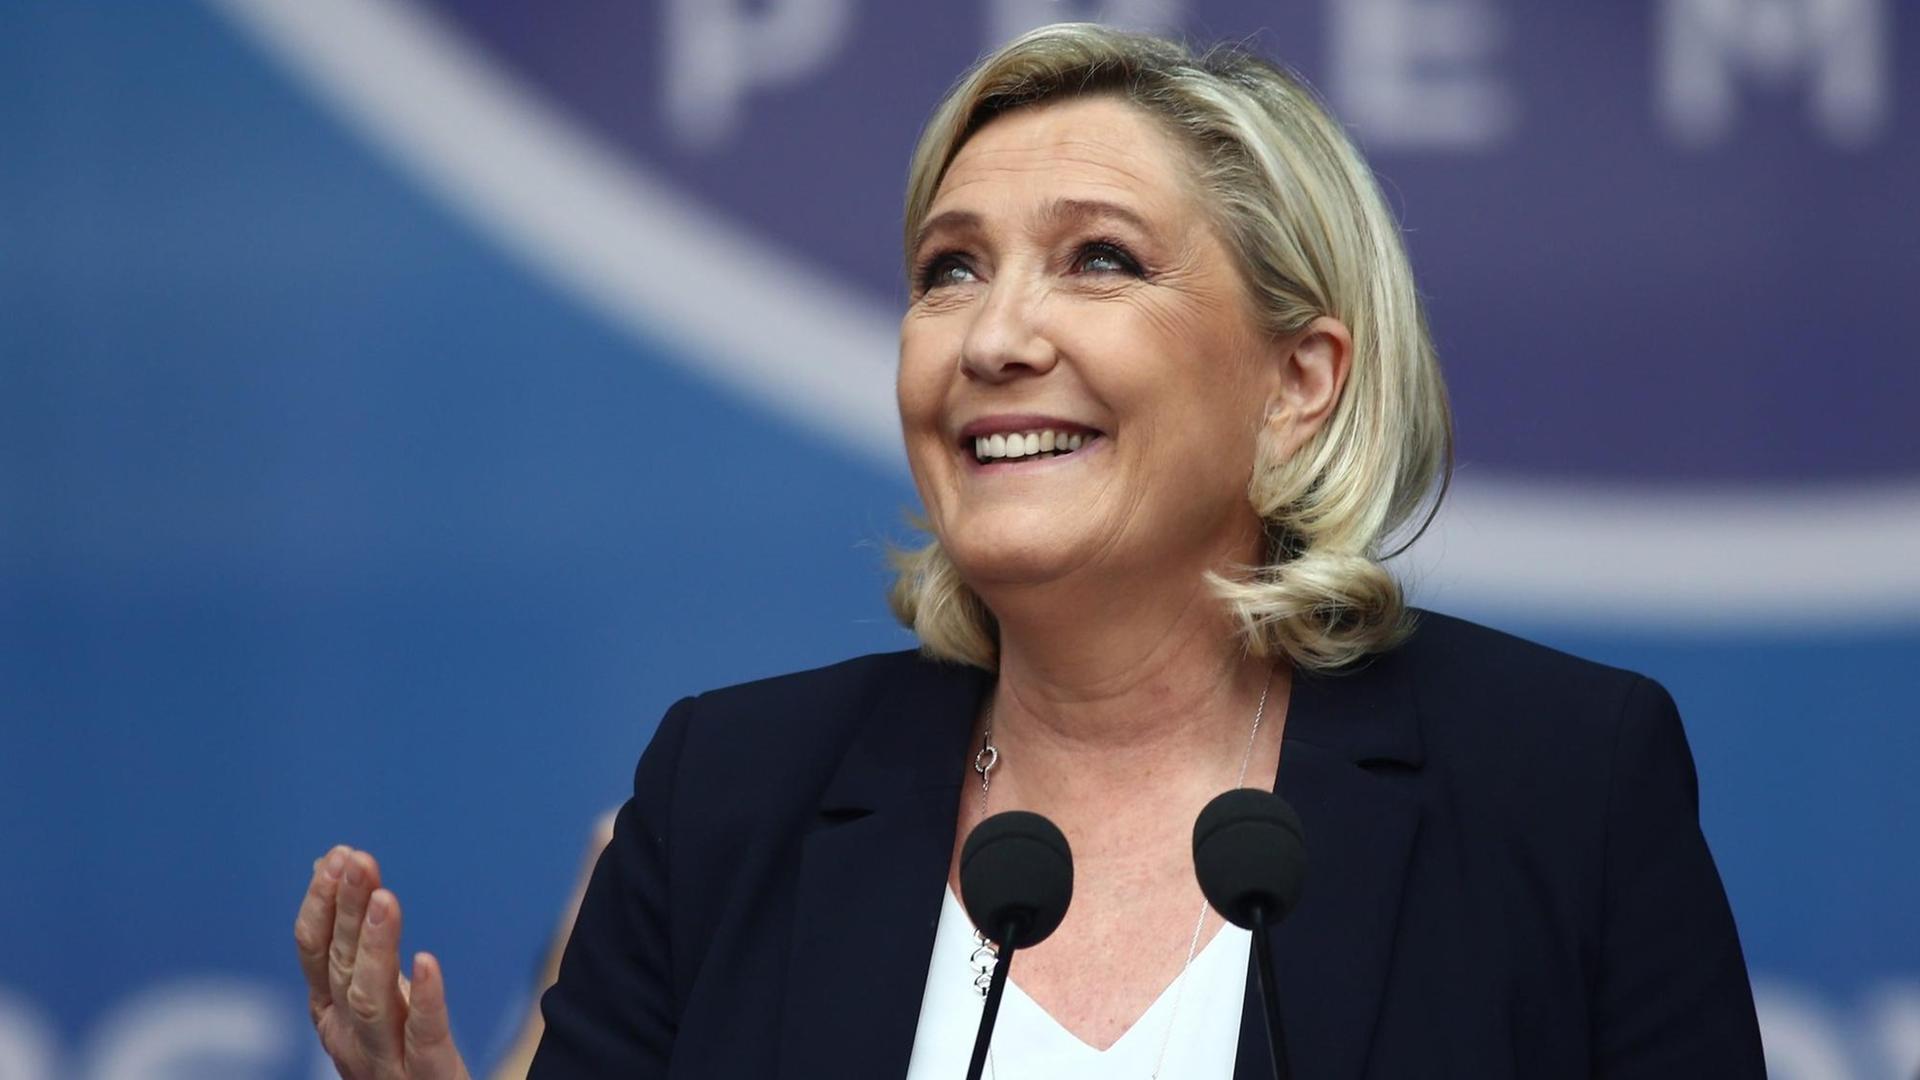 Porträt der französischen Rechtspopulistin Marine Le Pen während einer Rede vor einem Mikrofon.